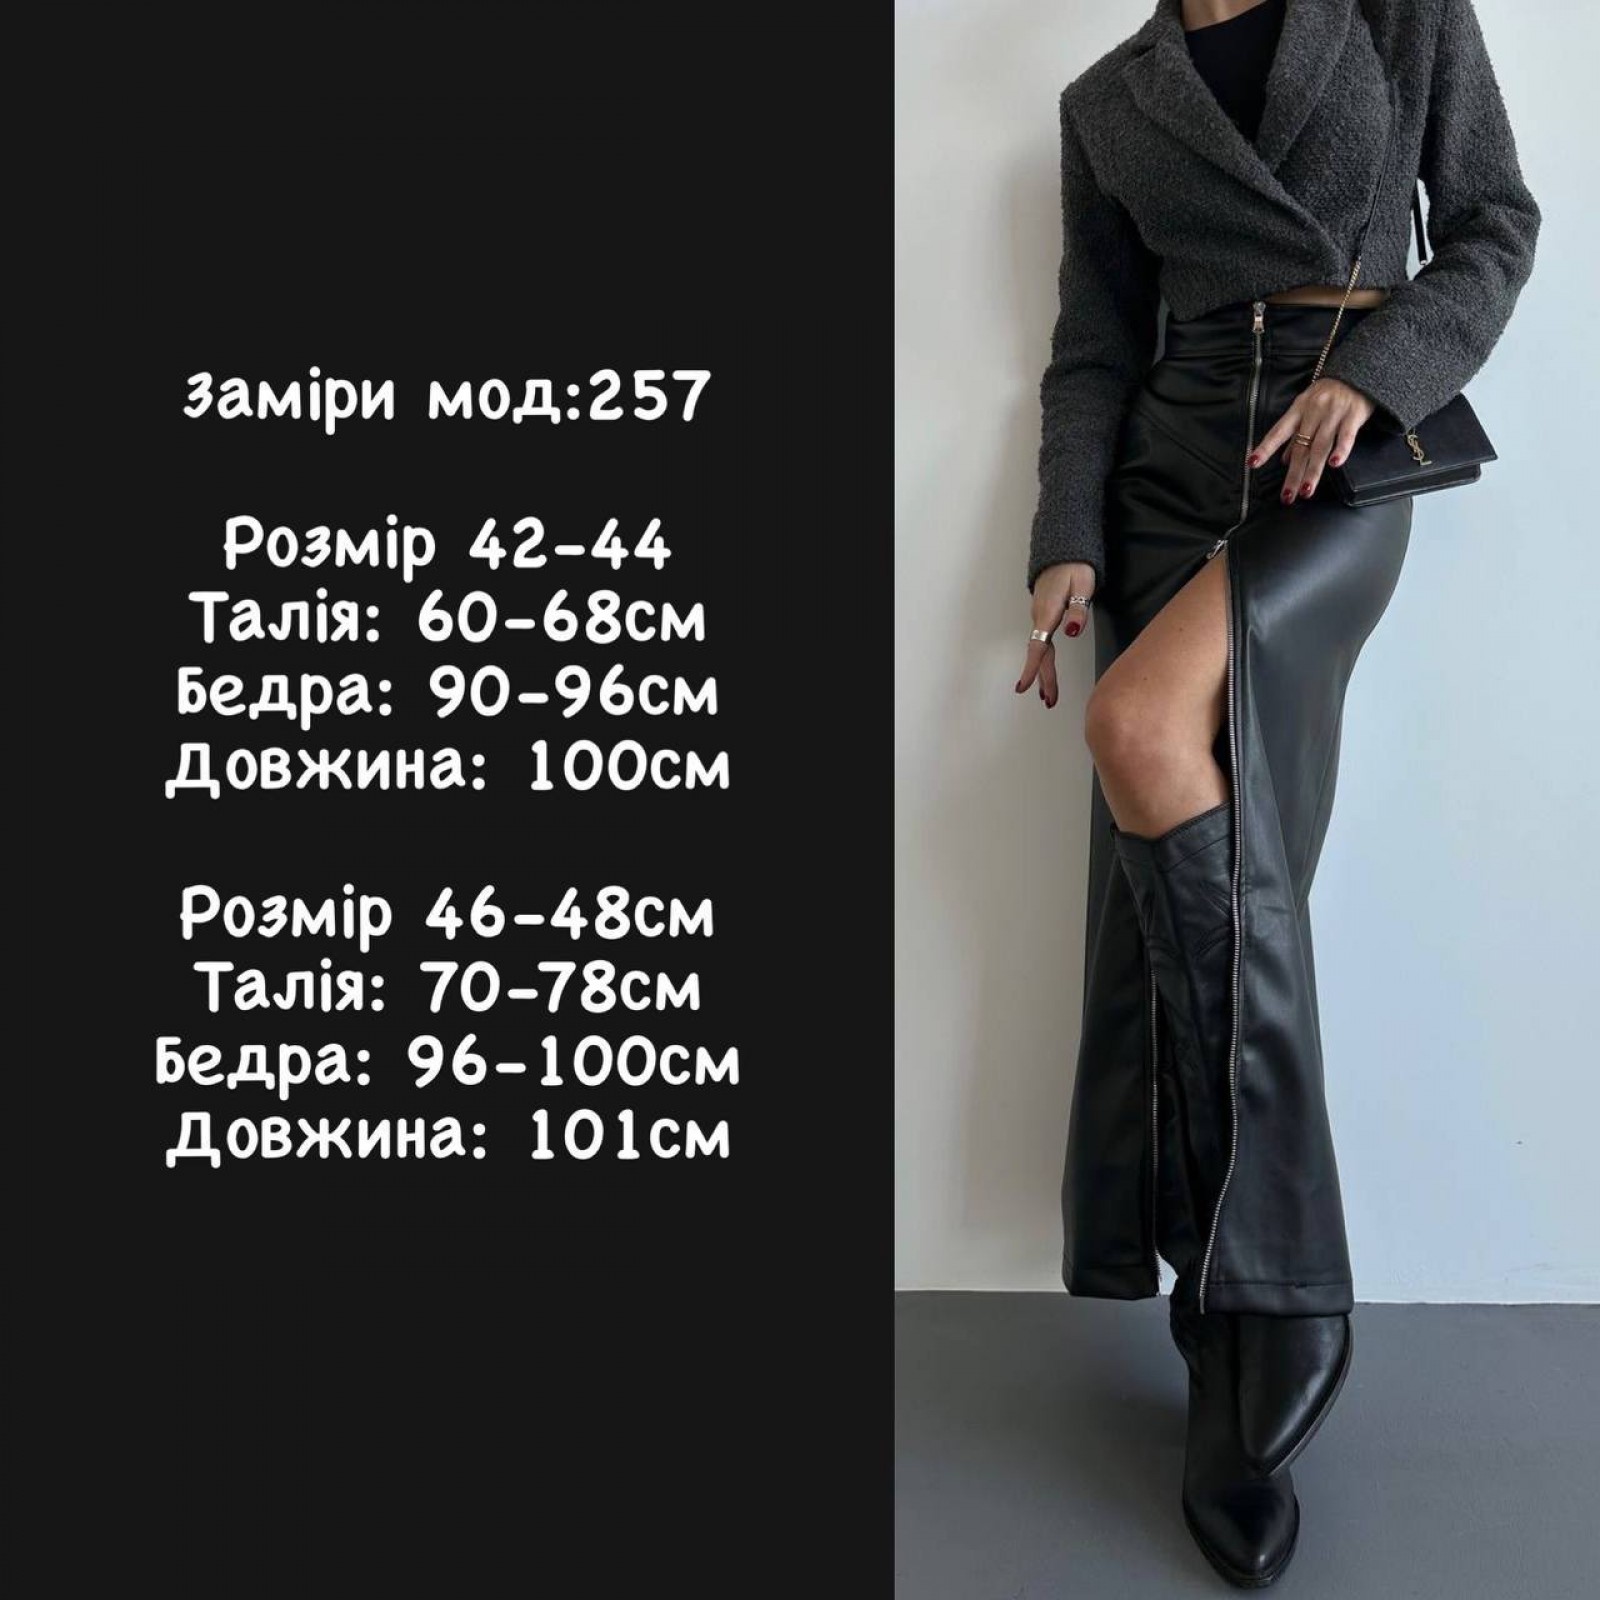 Жіноча спідниця максі з еко-шкіри колір чорний р.42/44 446411